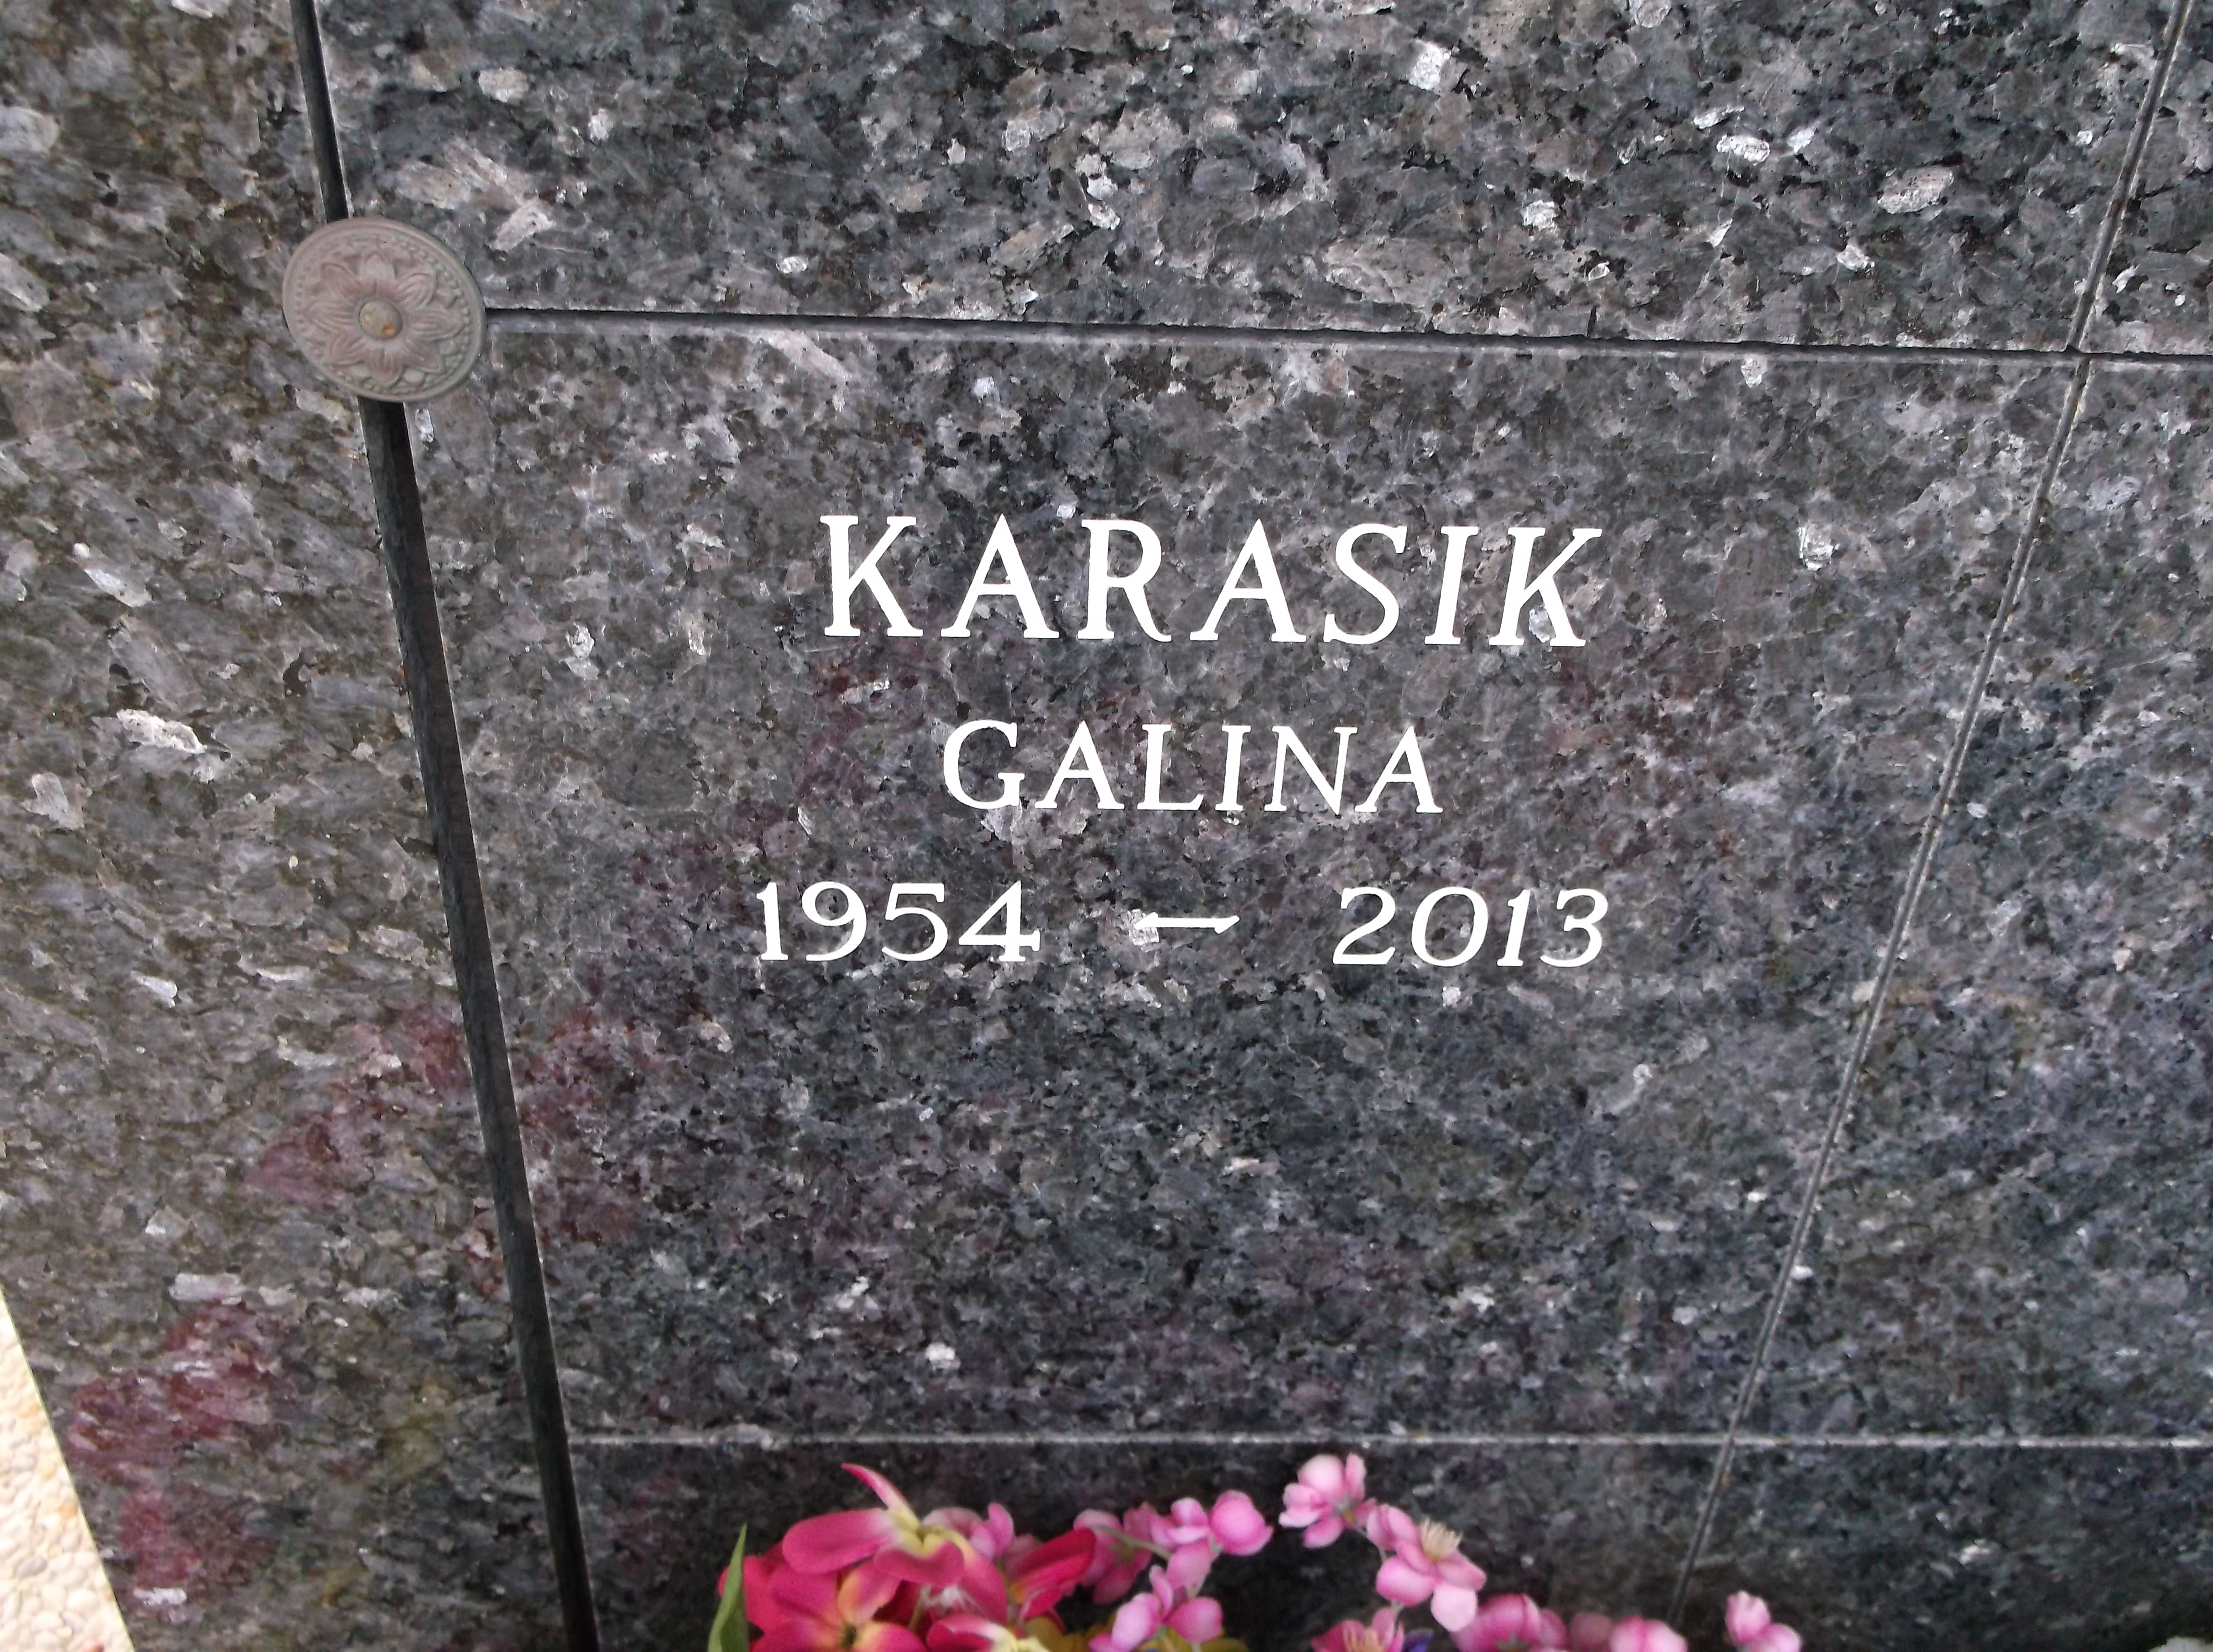 Galina Karasik